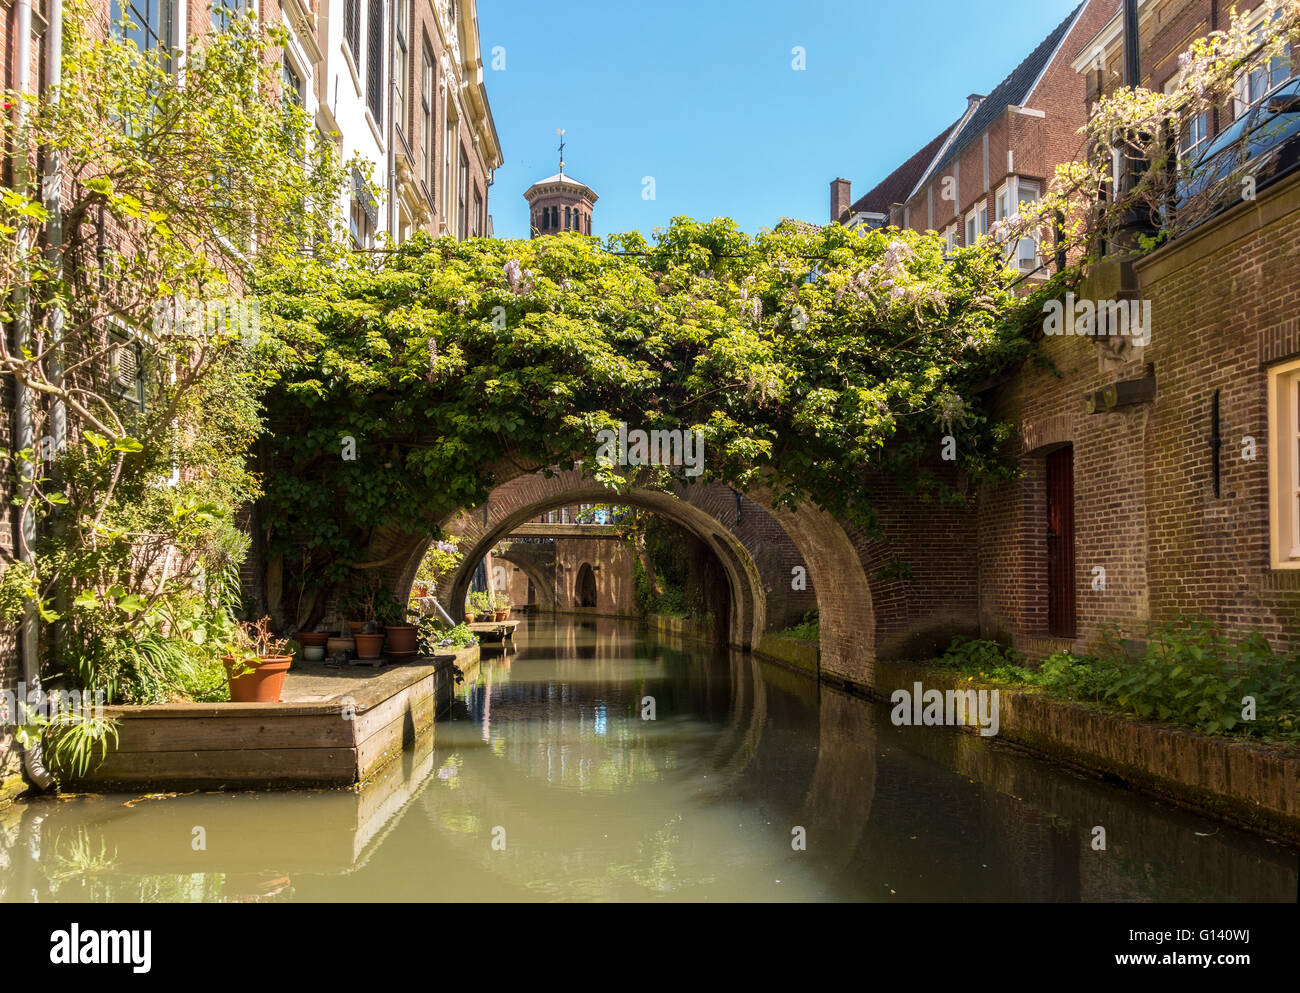 Canal étroit à Utrecht aux Pays-Bas. Kromme Nieuwegracht avec salle de ponts. Banque D'Images